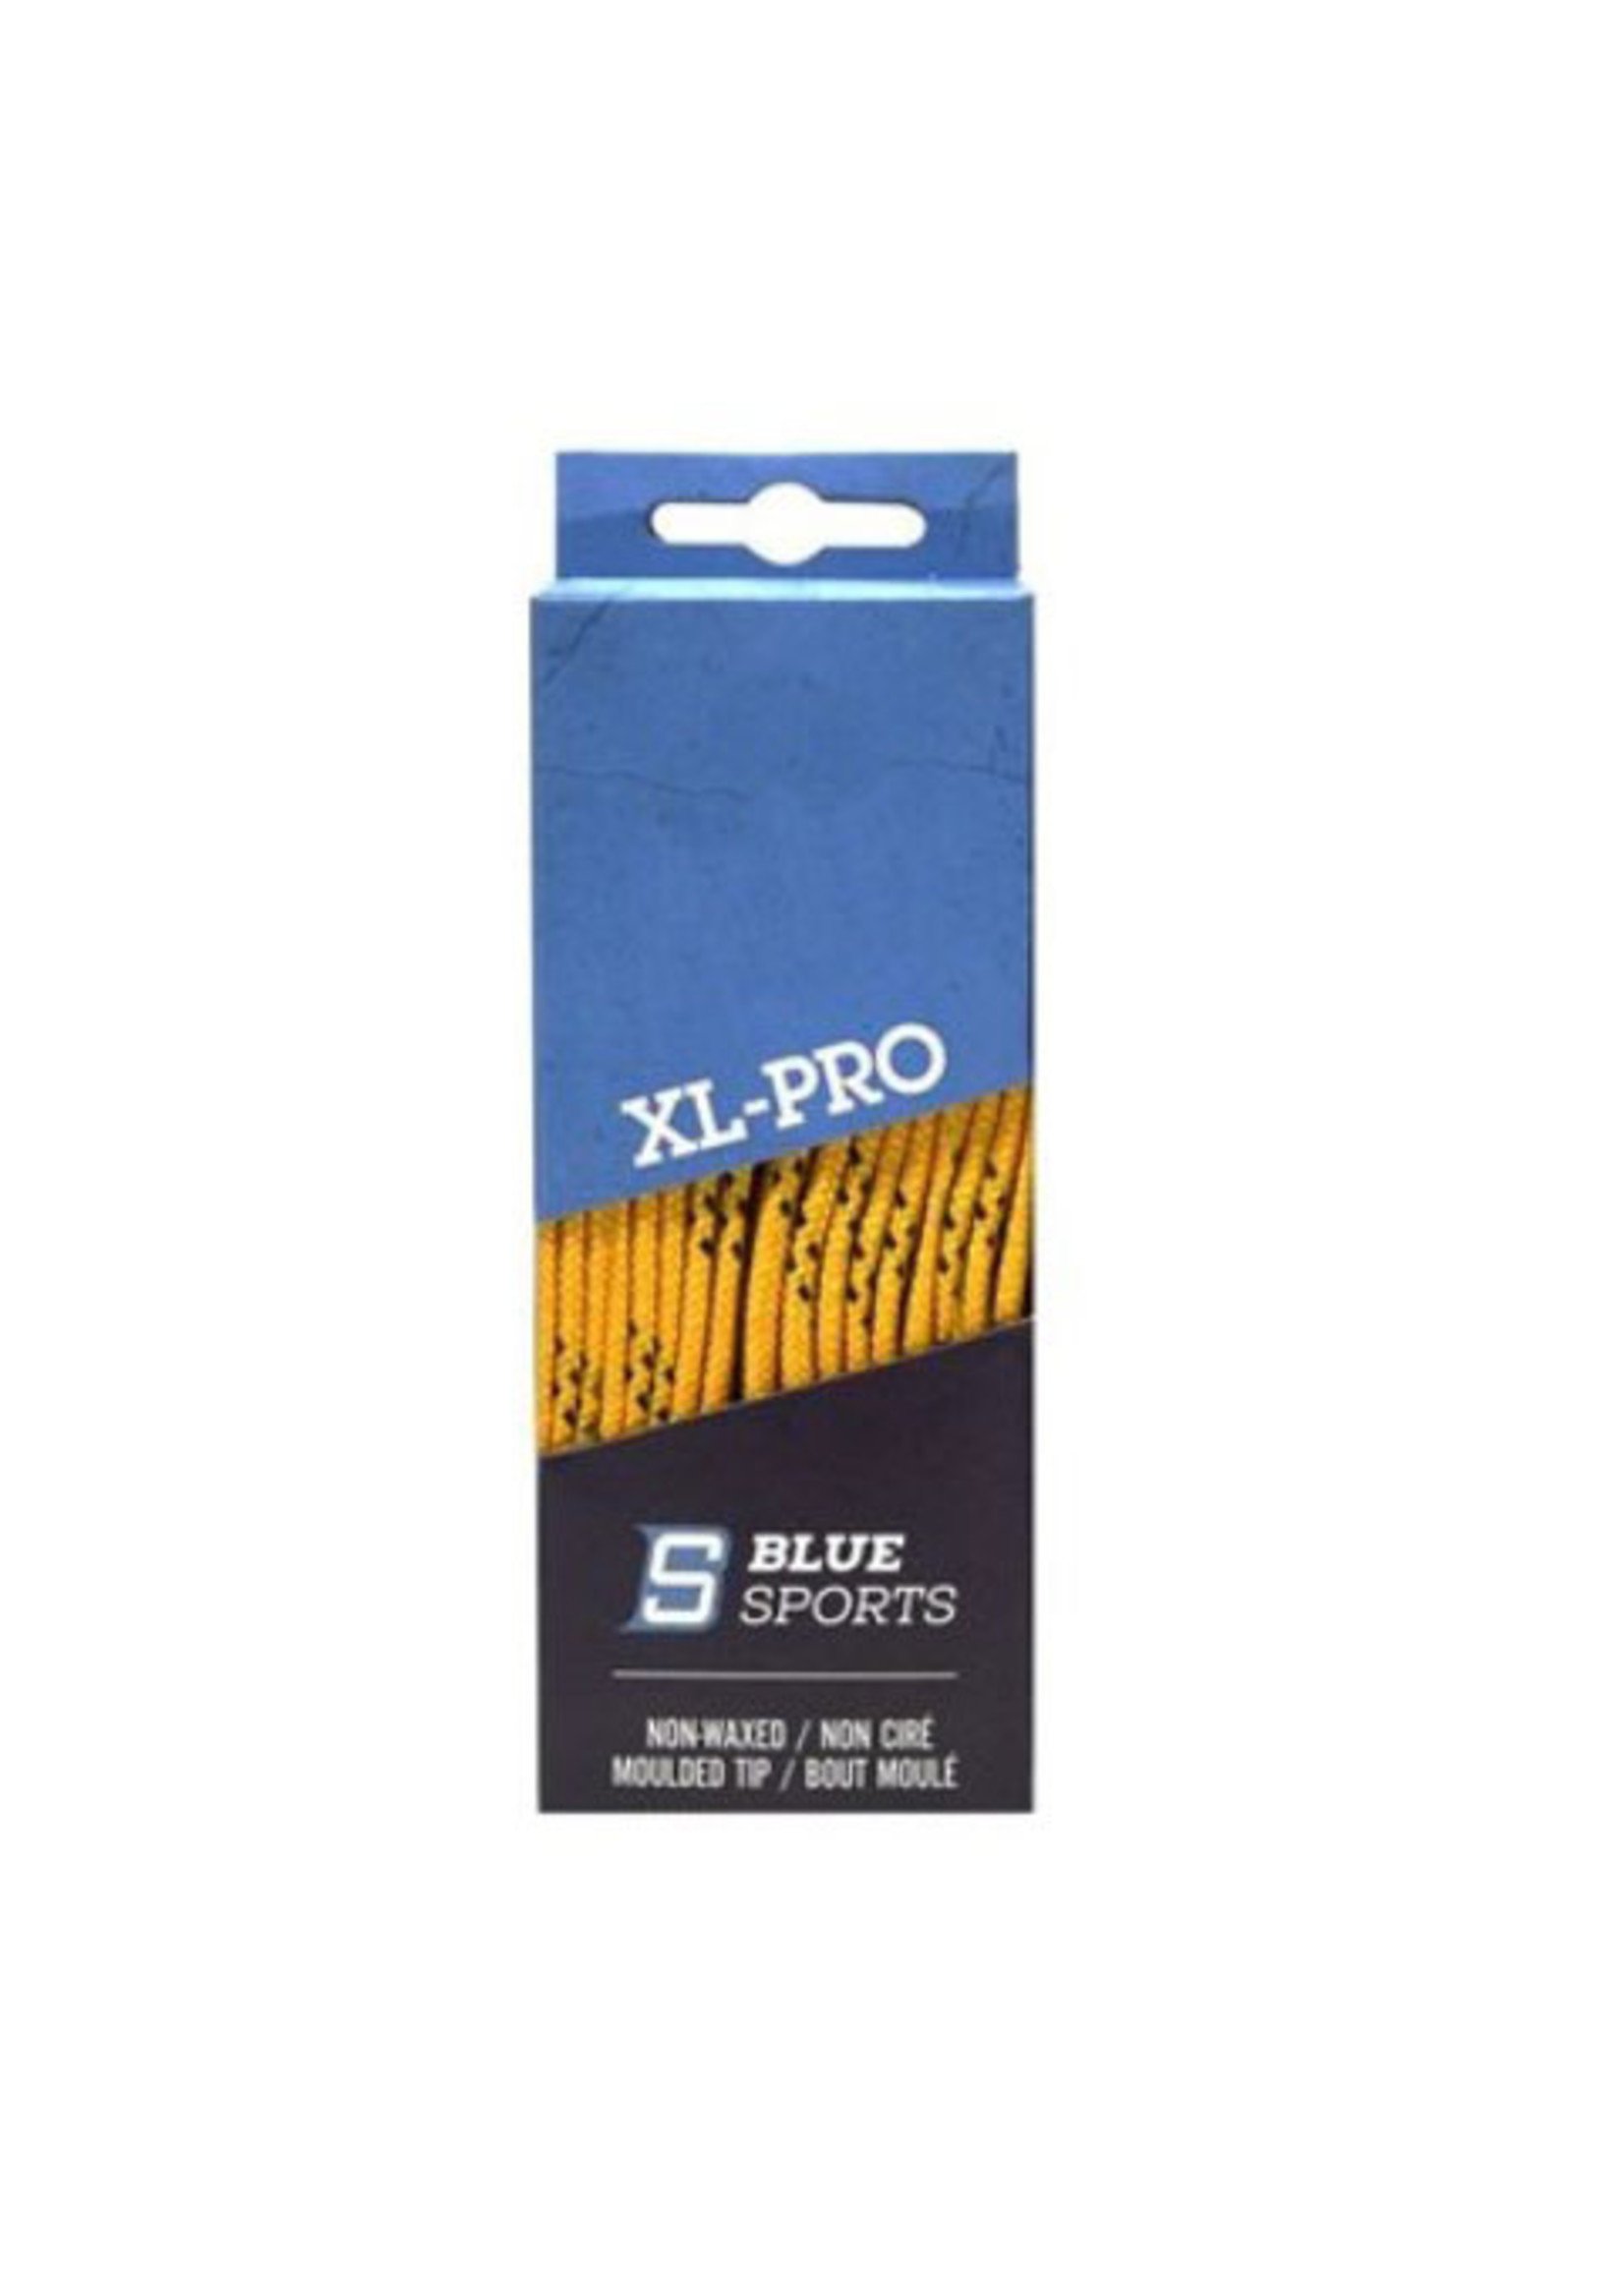 BLUE SPORTS XL-PRO LACES